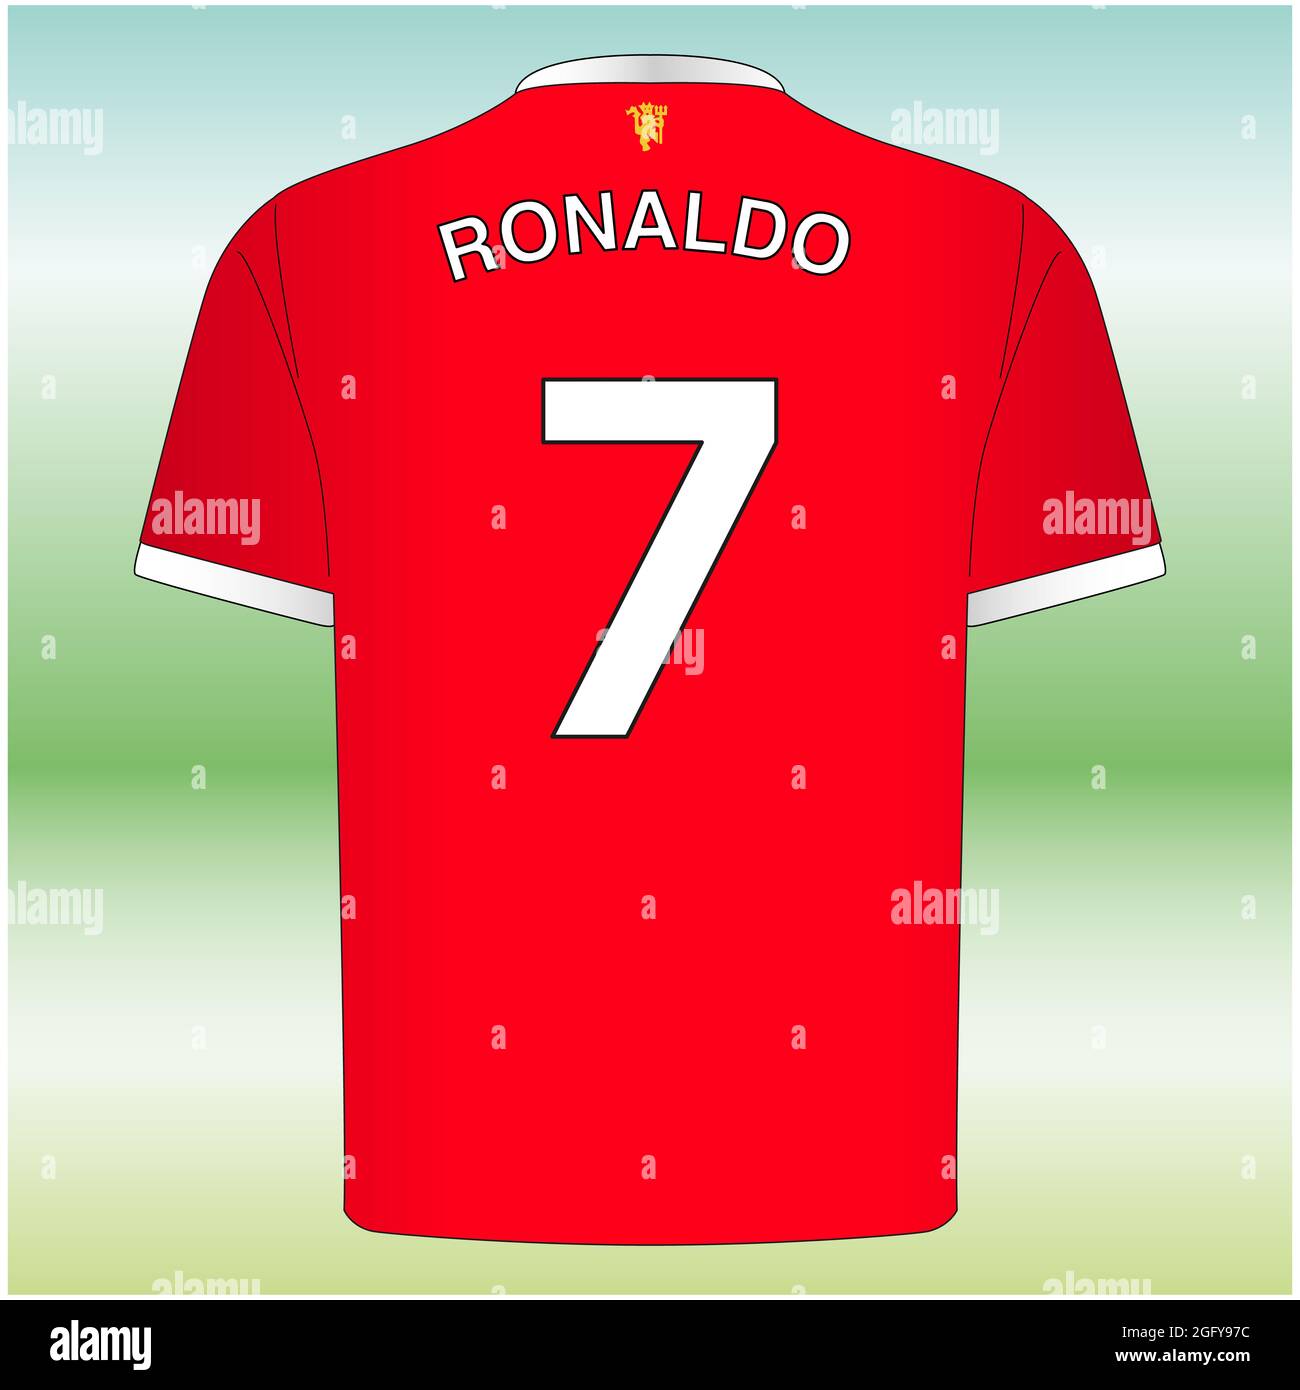 Camiseta de fútbol ronaldo e de alta resolución - Alamy